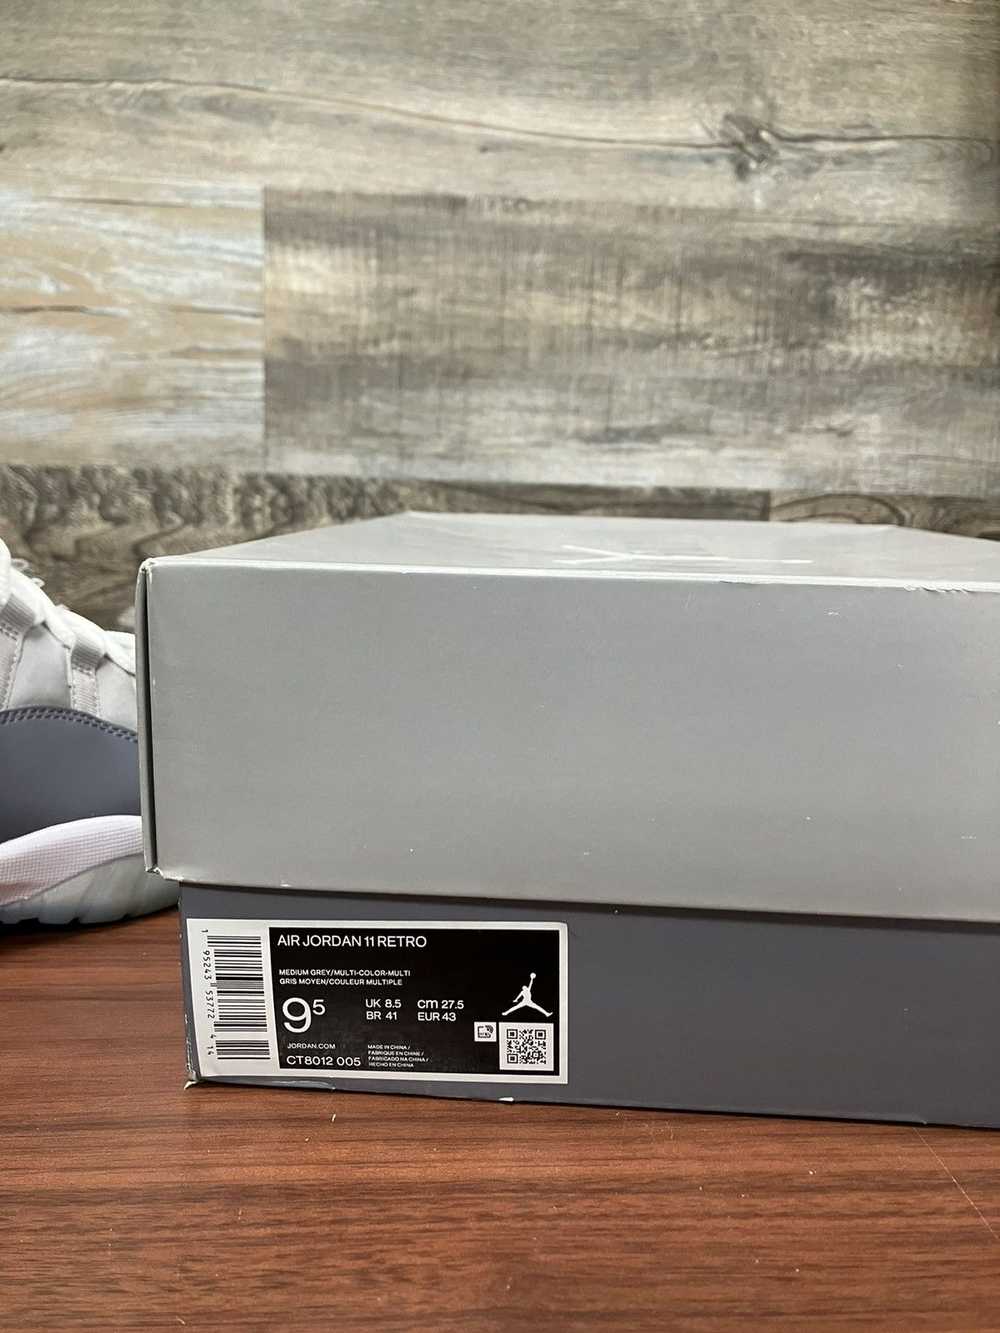 Jordan Brand Air Jordan 11 Cool Grey Size 9.5 - image 7